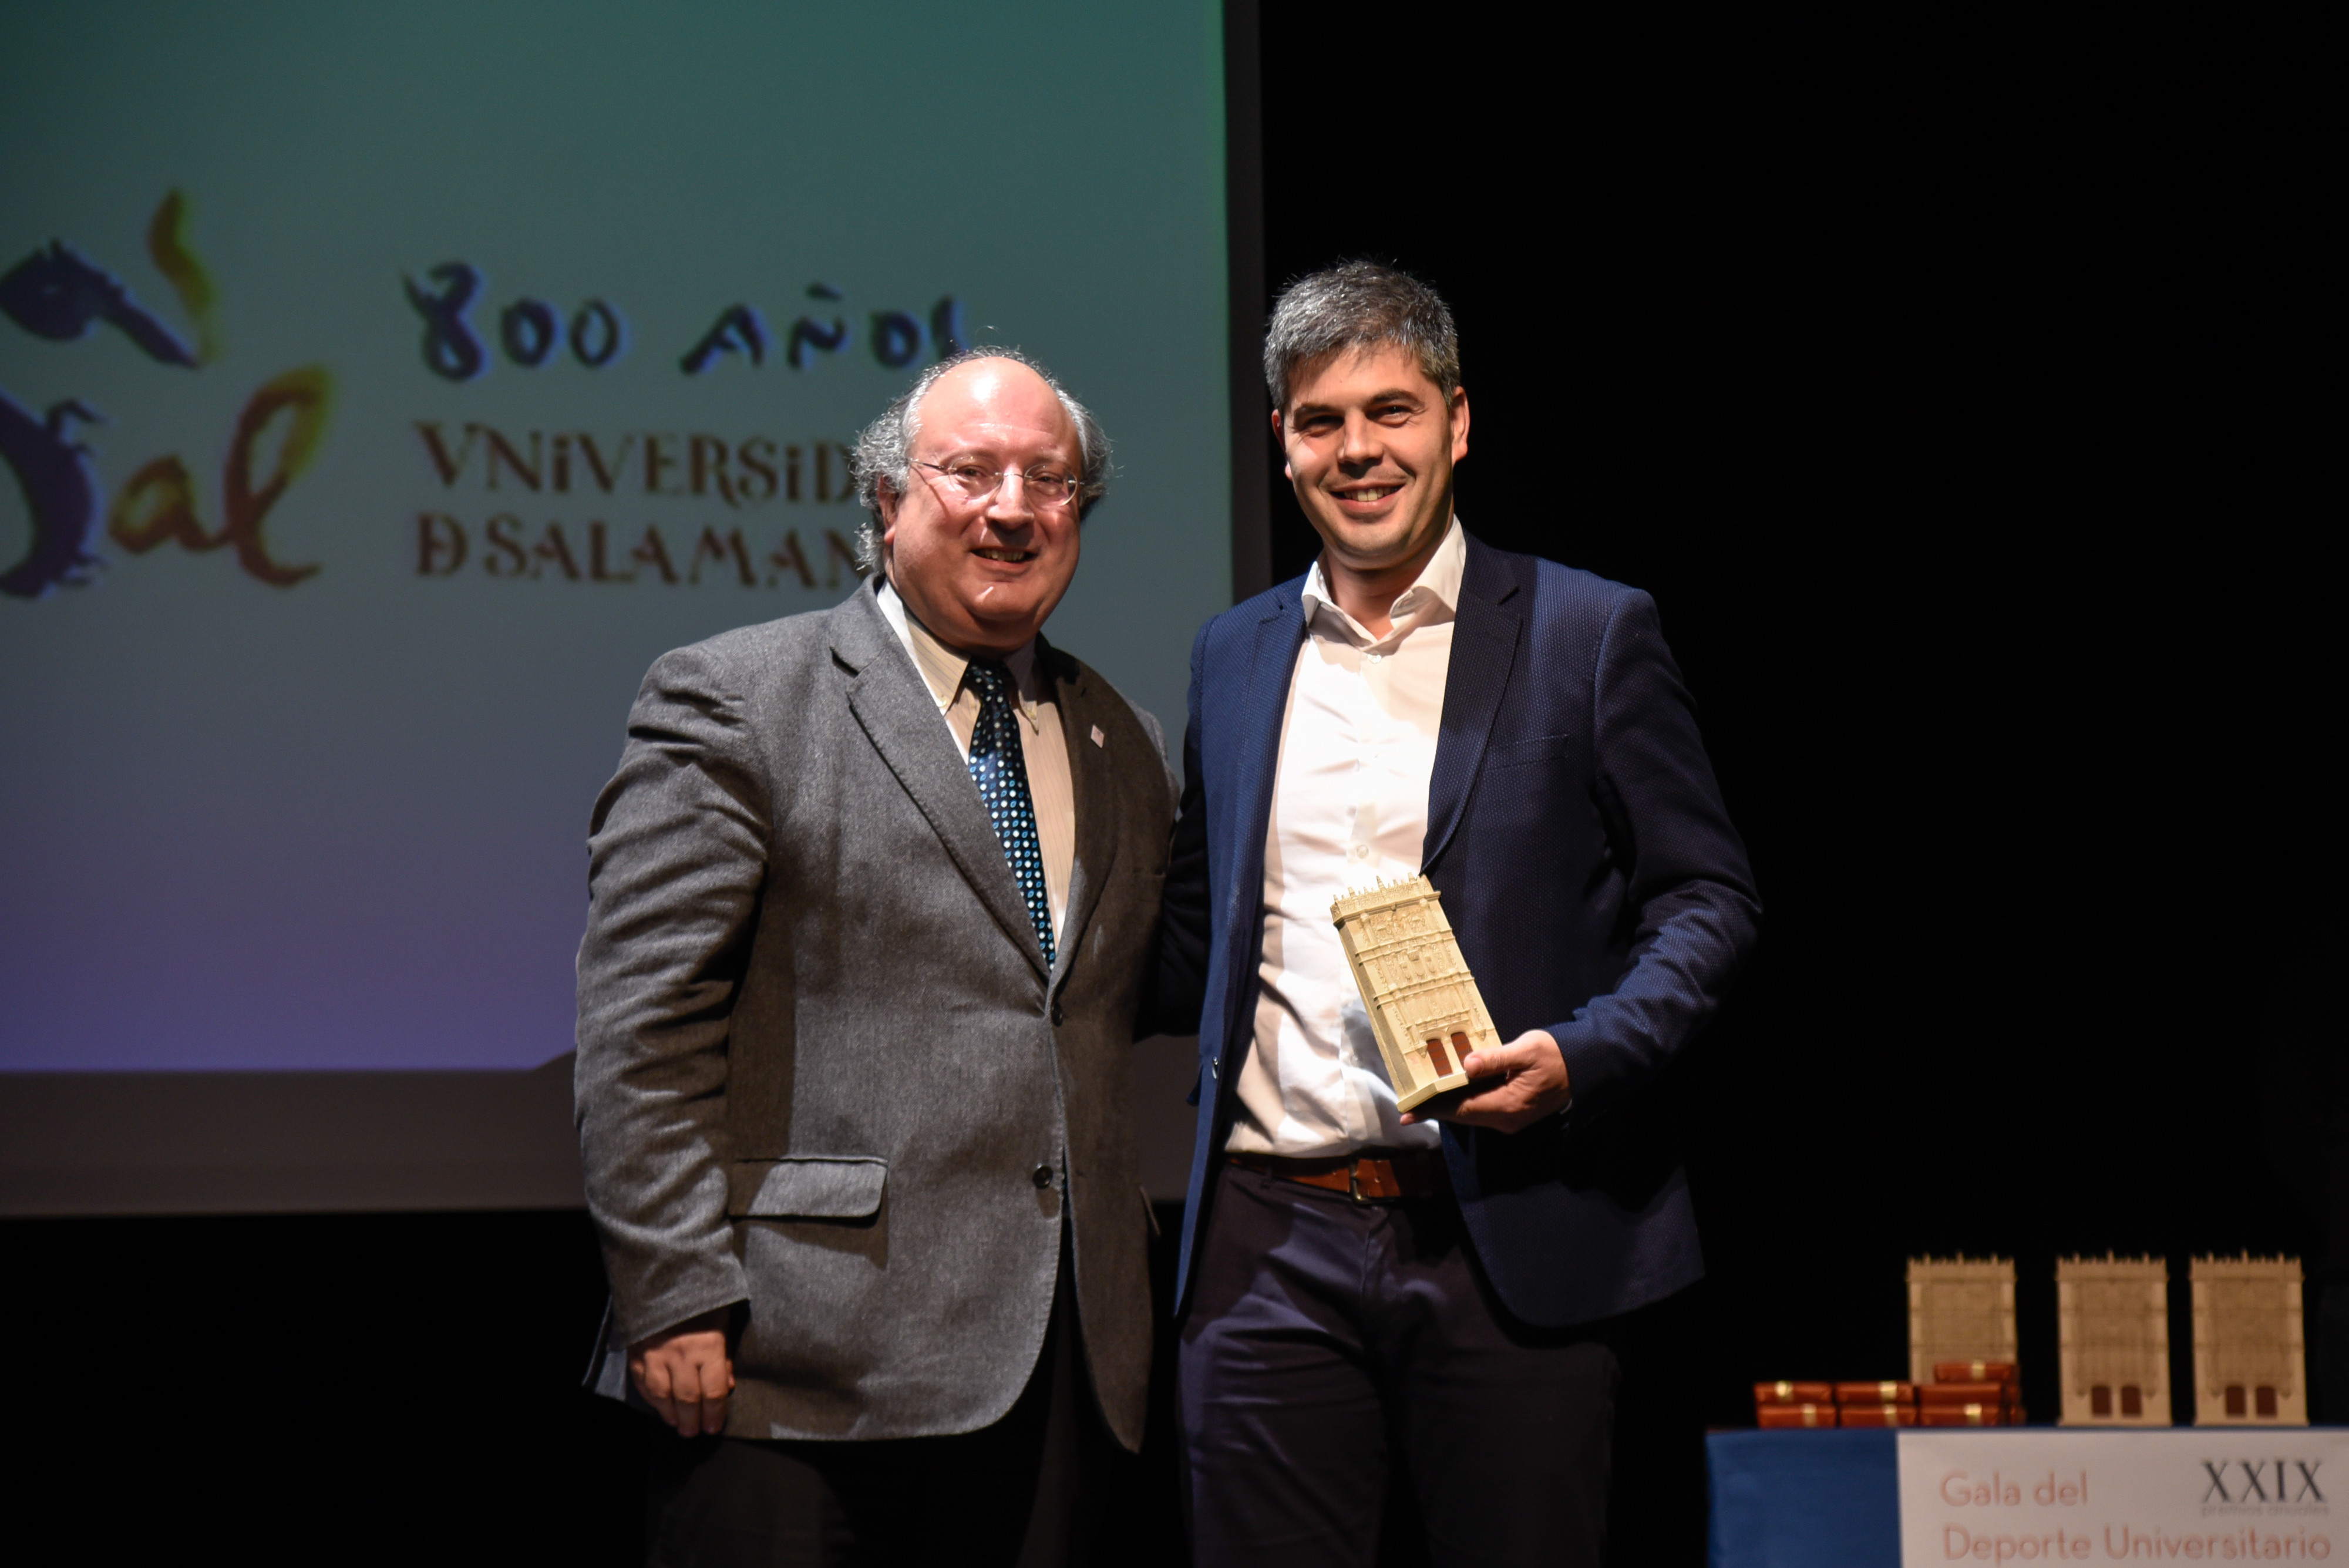 El Servicio de Educación Física y Deportes de la Universidad de Salamanca entrega los XXIX Premios Anuales del Deporte Universitario